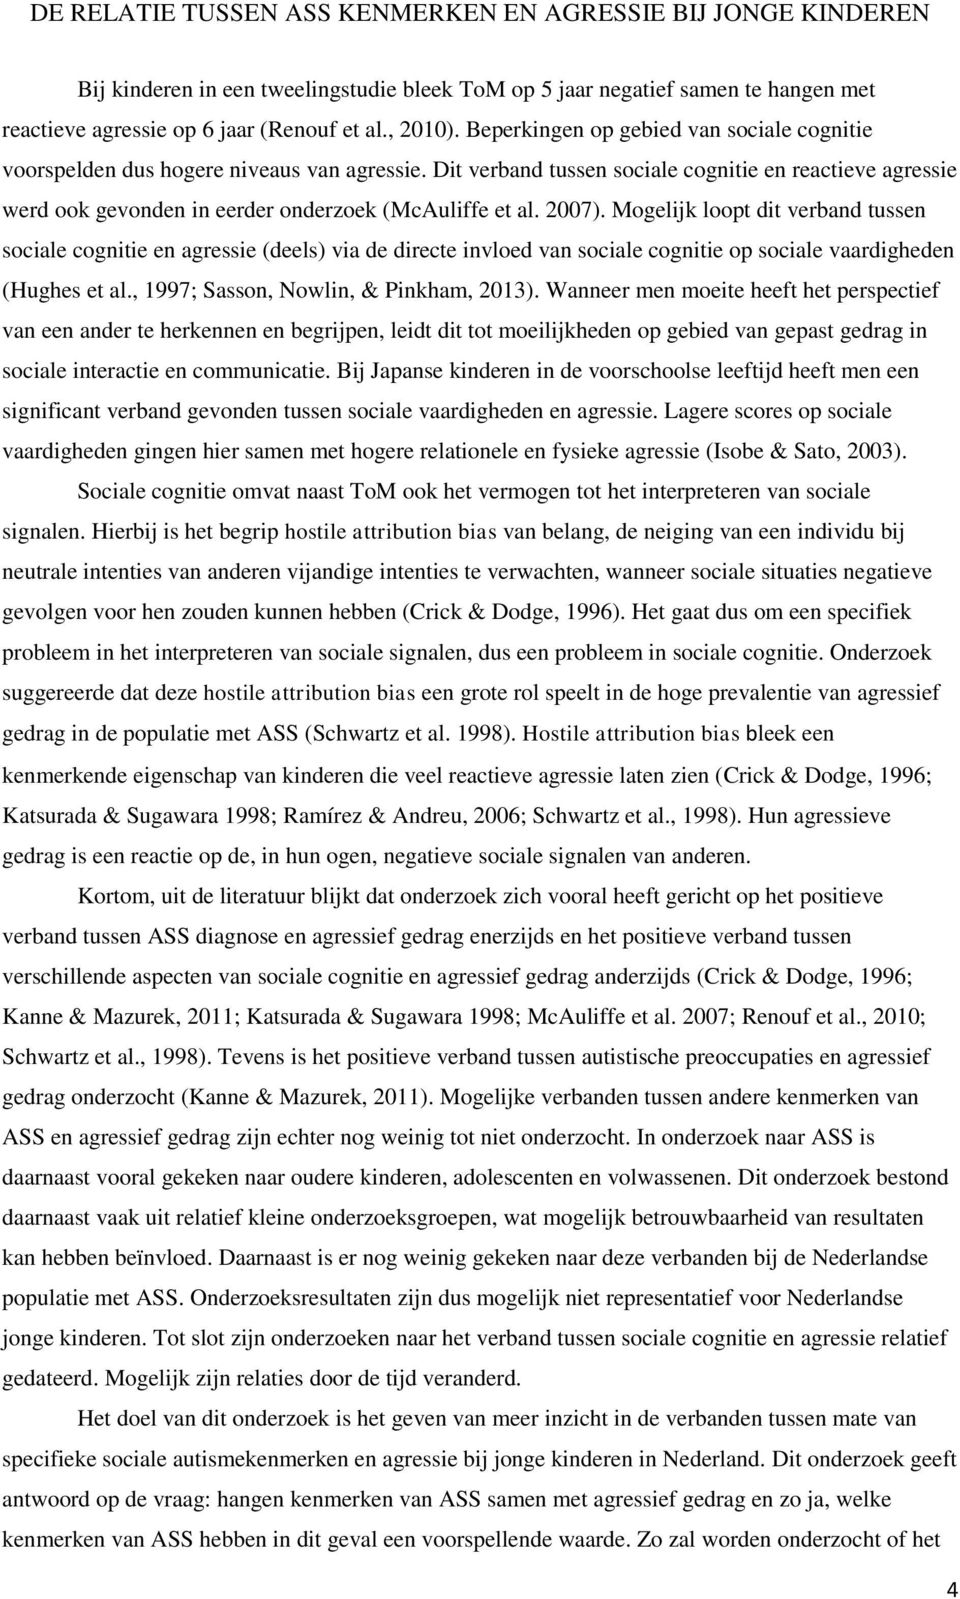 Dit verband tussen sociale cognitie en reactieve agressie werd ook gevonden in eerder onderzoek (McAuliffe et al. 2007).